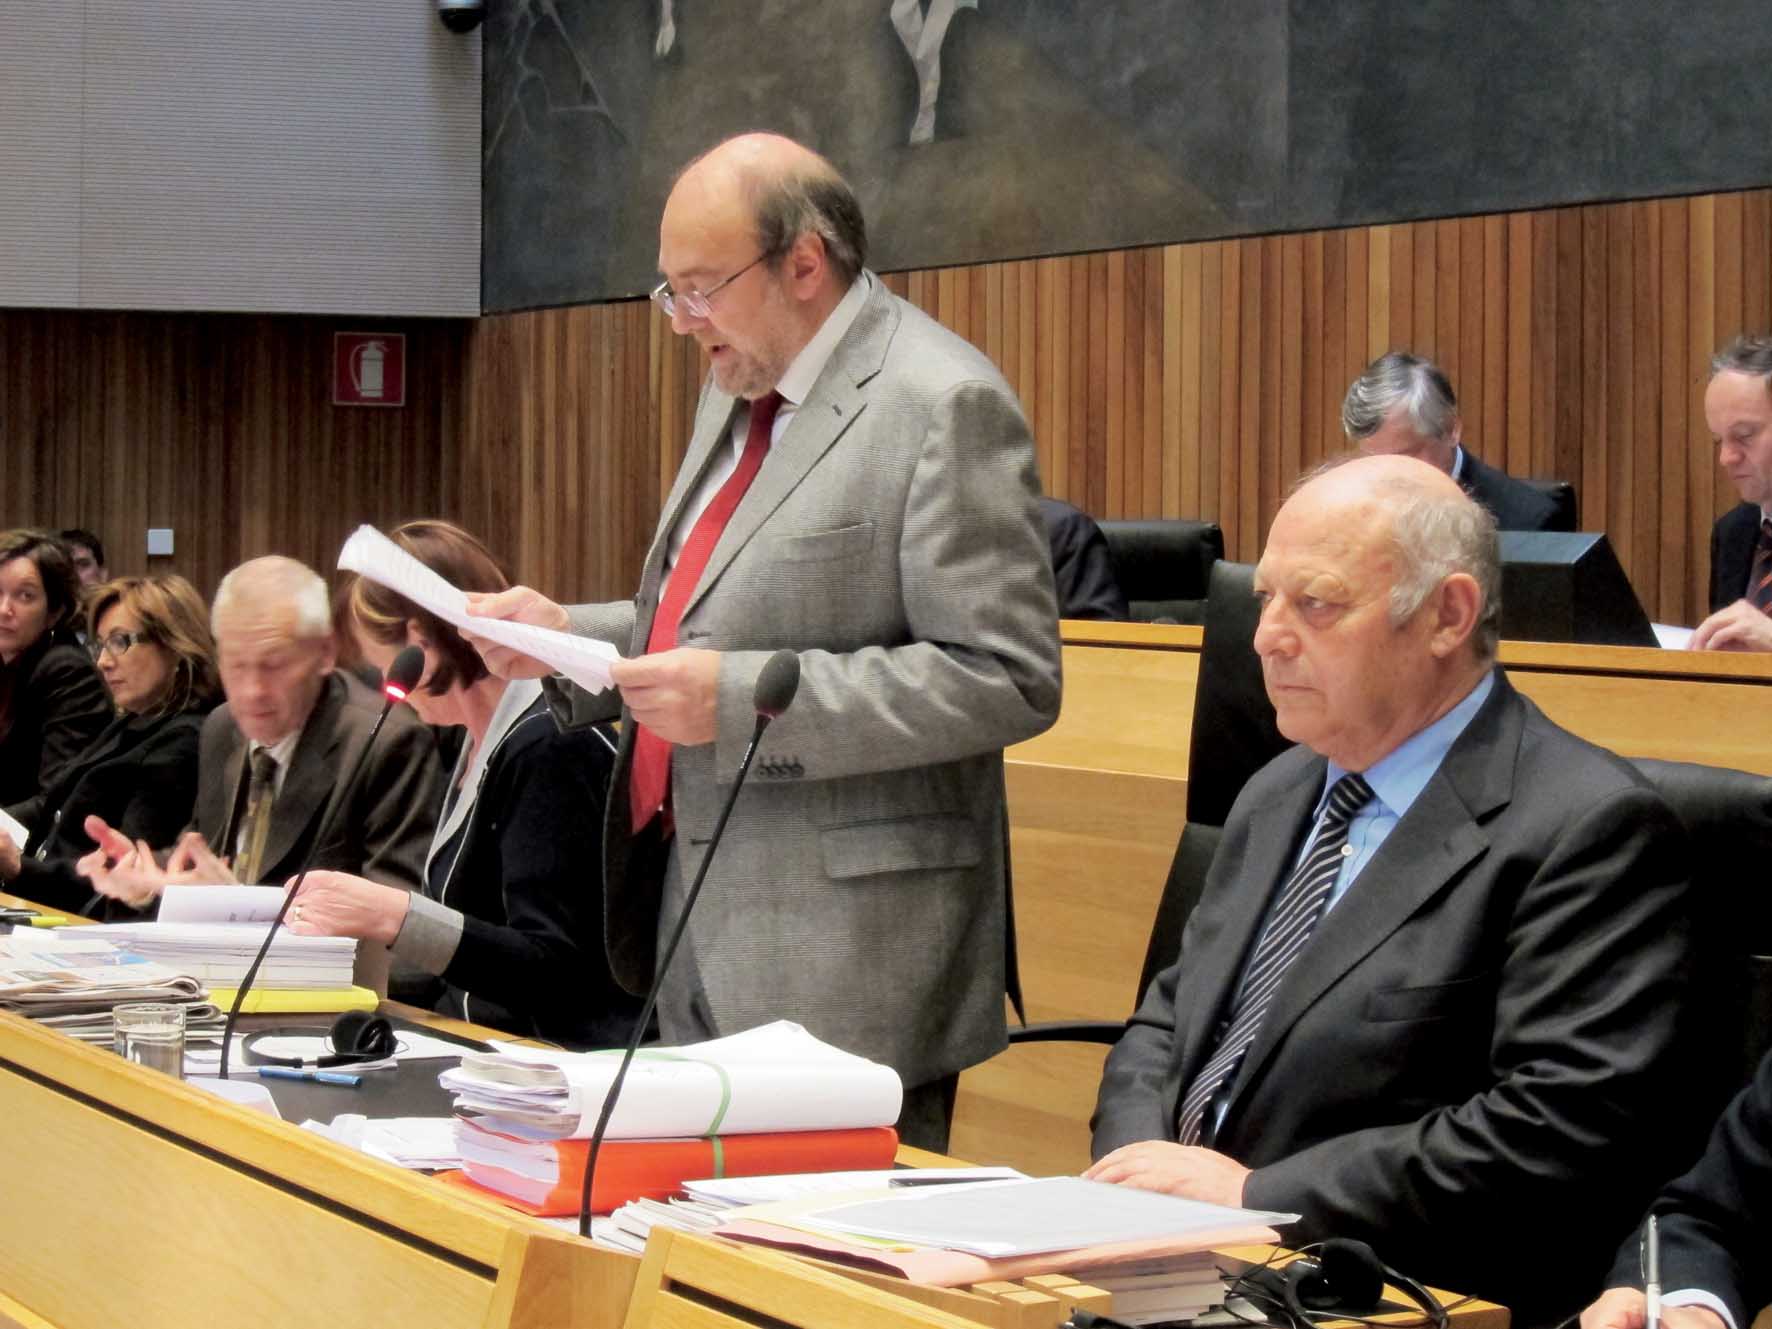 Dellai consiglio regionale durnwalder legge relazione 2012 1